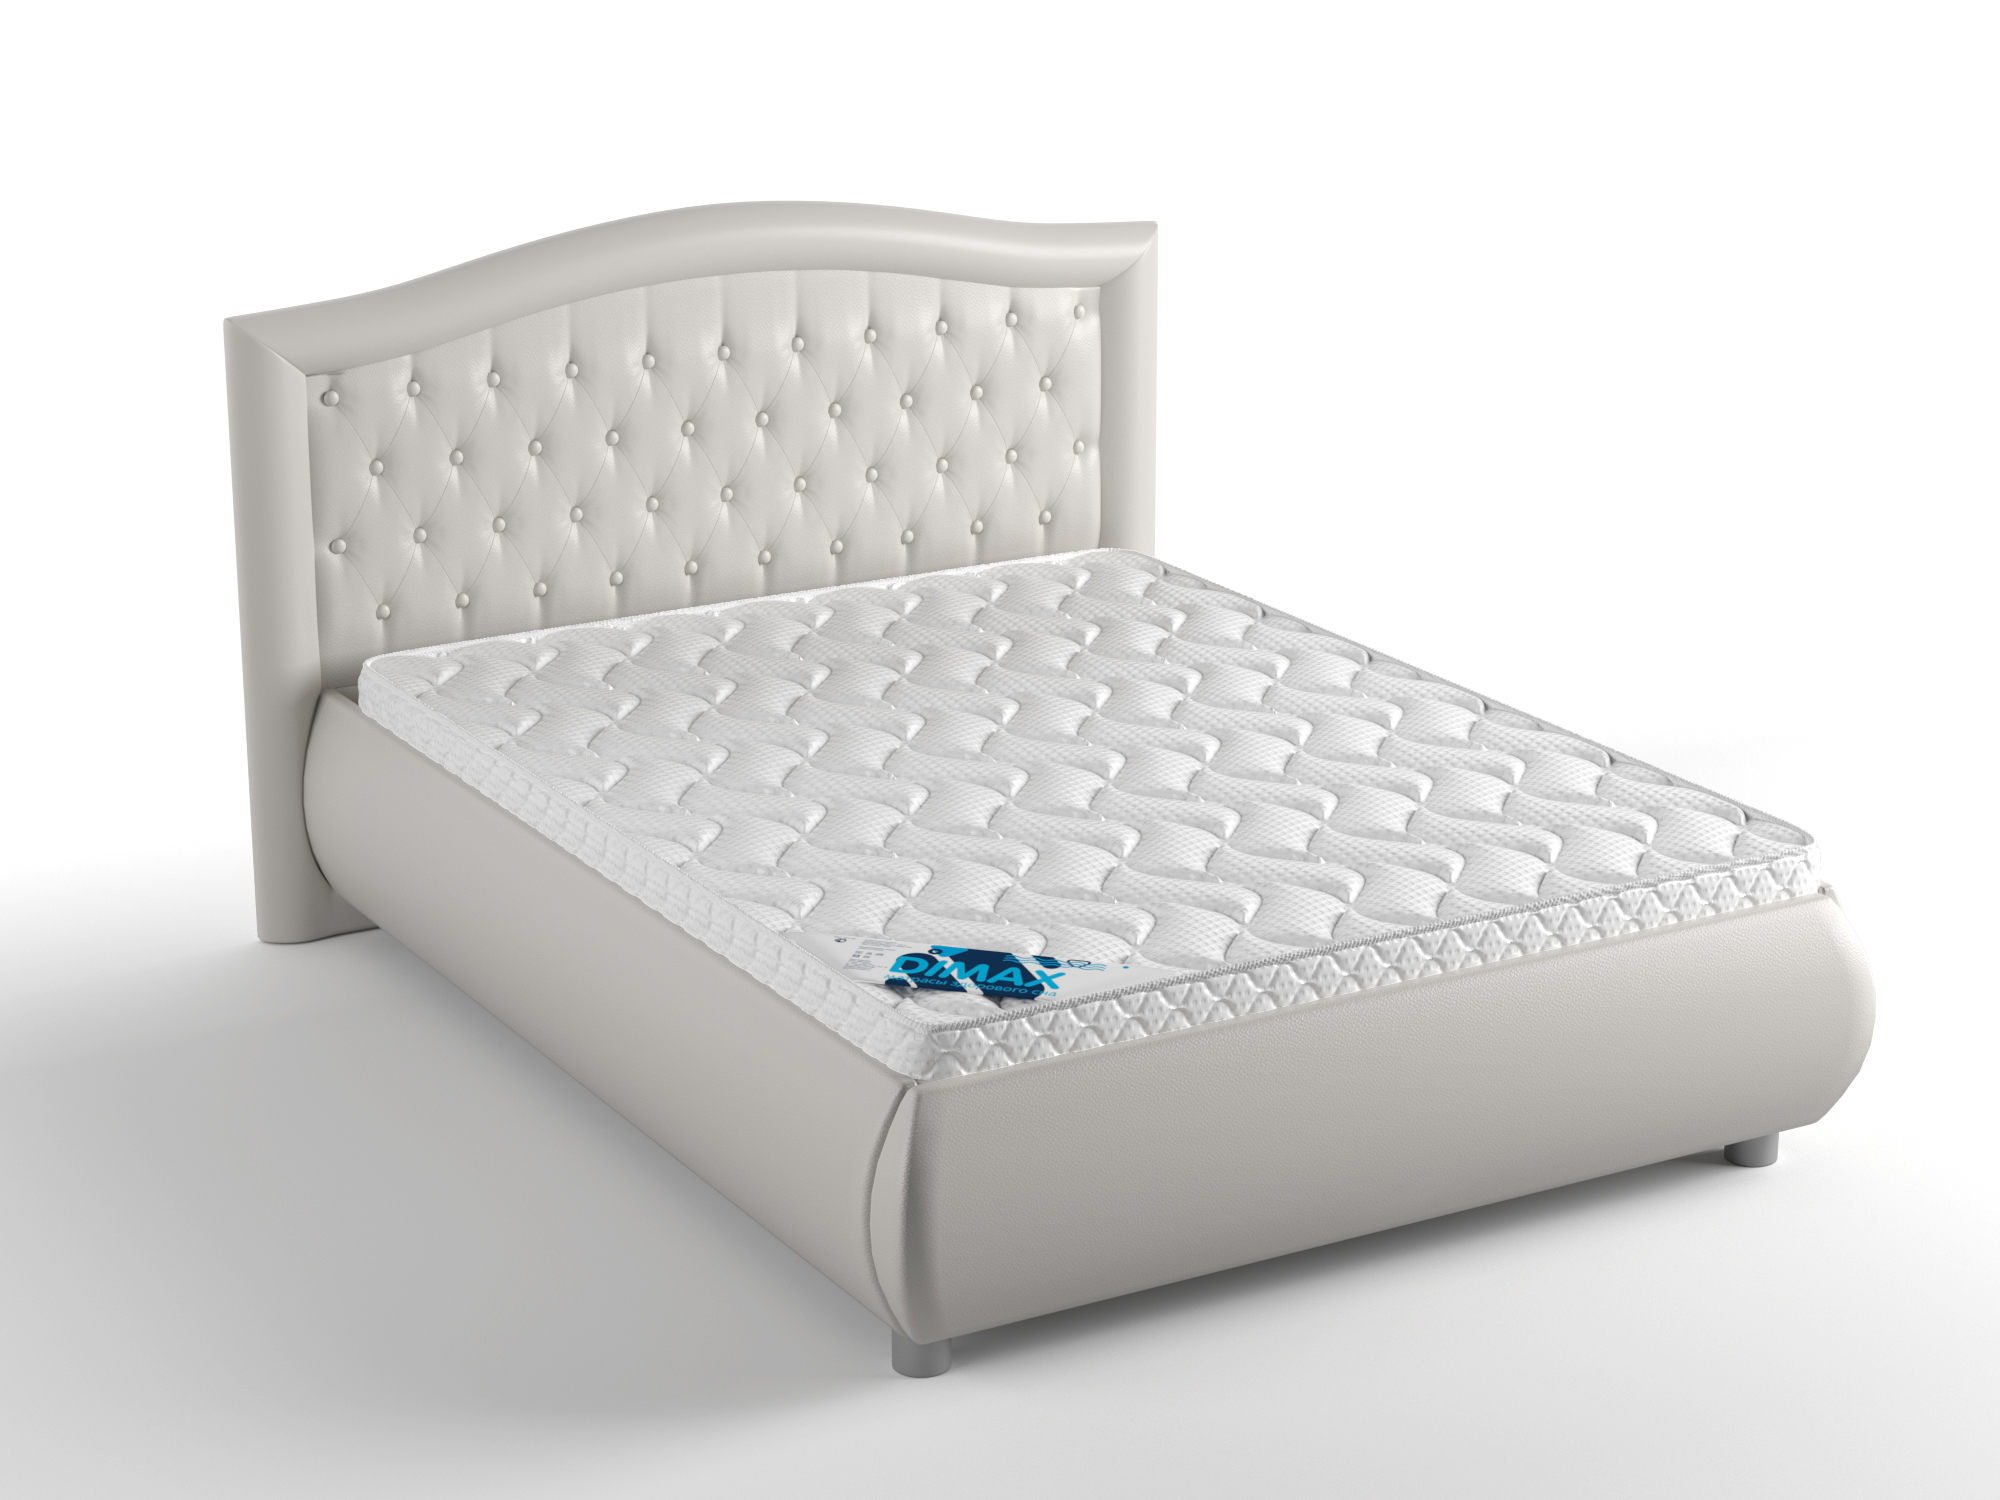 Купить кровать на озоне с матрасом. Кровать Dimax Эридан. Кровать Dimax Нордо 140х200. Кровать Dimax Испаньола. Кровать Dimax Нордо 160х200.